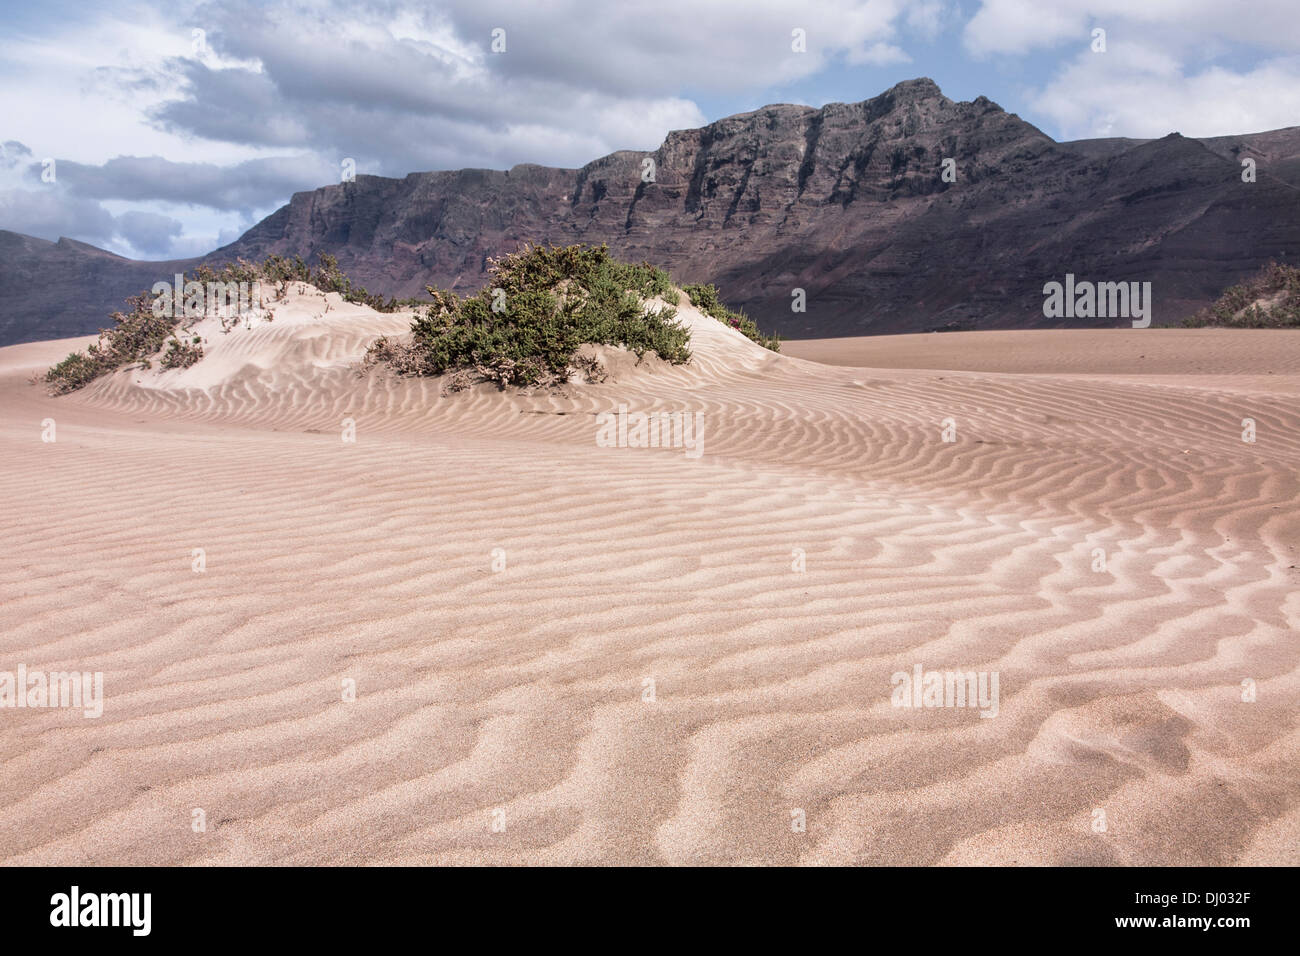 La plage de Famara sand dunes risko montagne falaise risco Banque D'Images